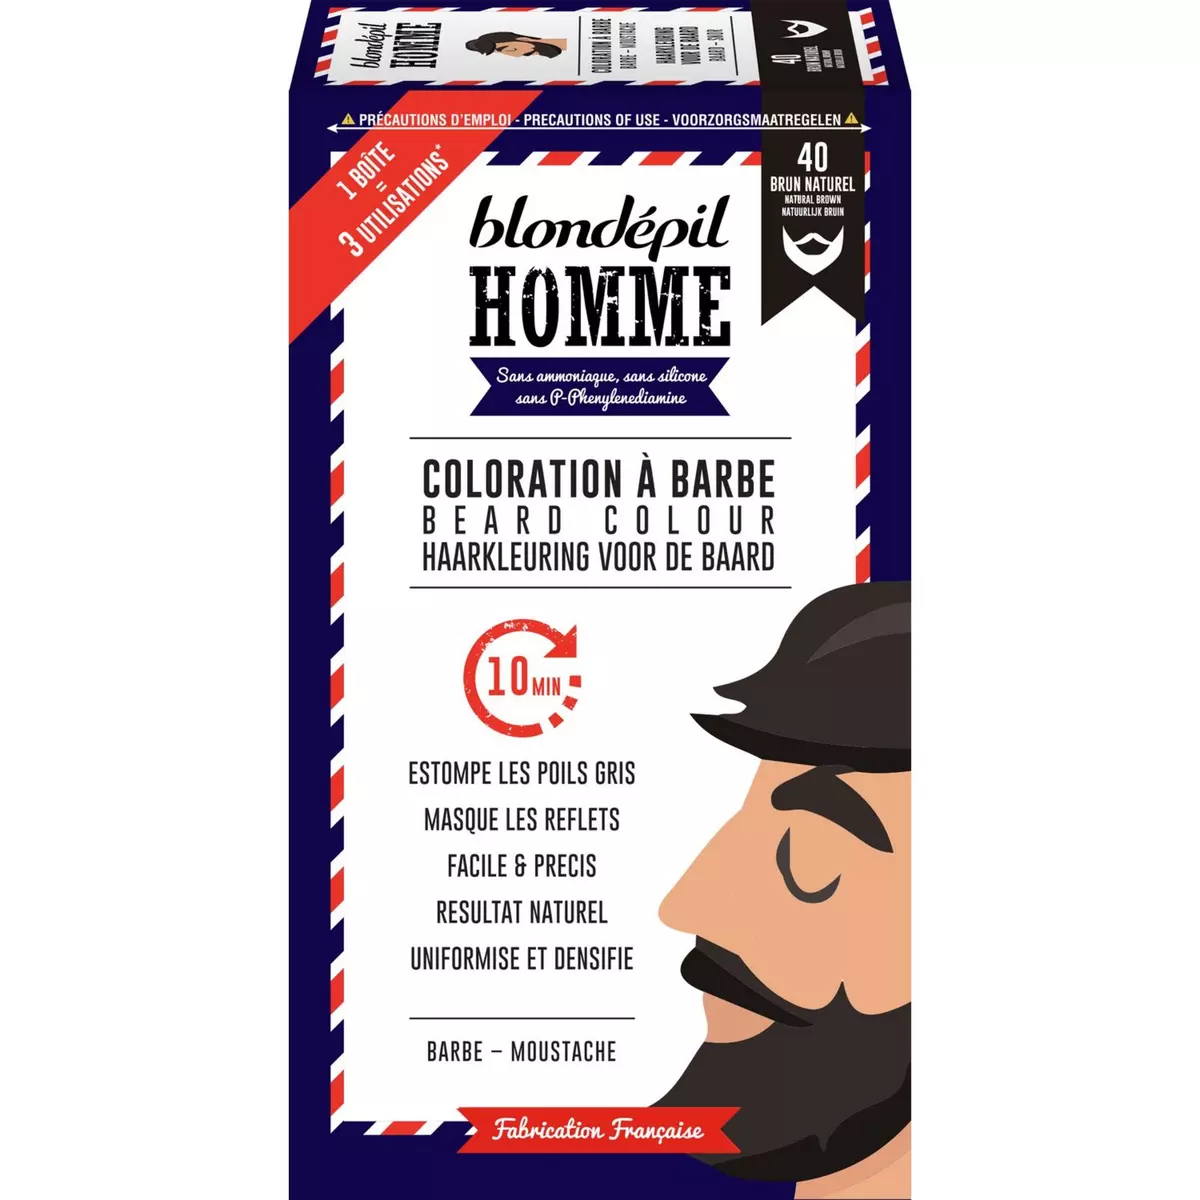 BLONDEPIL HOMME Coloration pour barbe et moustache 40 brun naturel 3 utilisations 1 boite